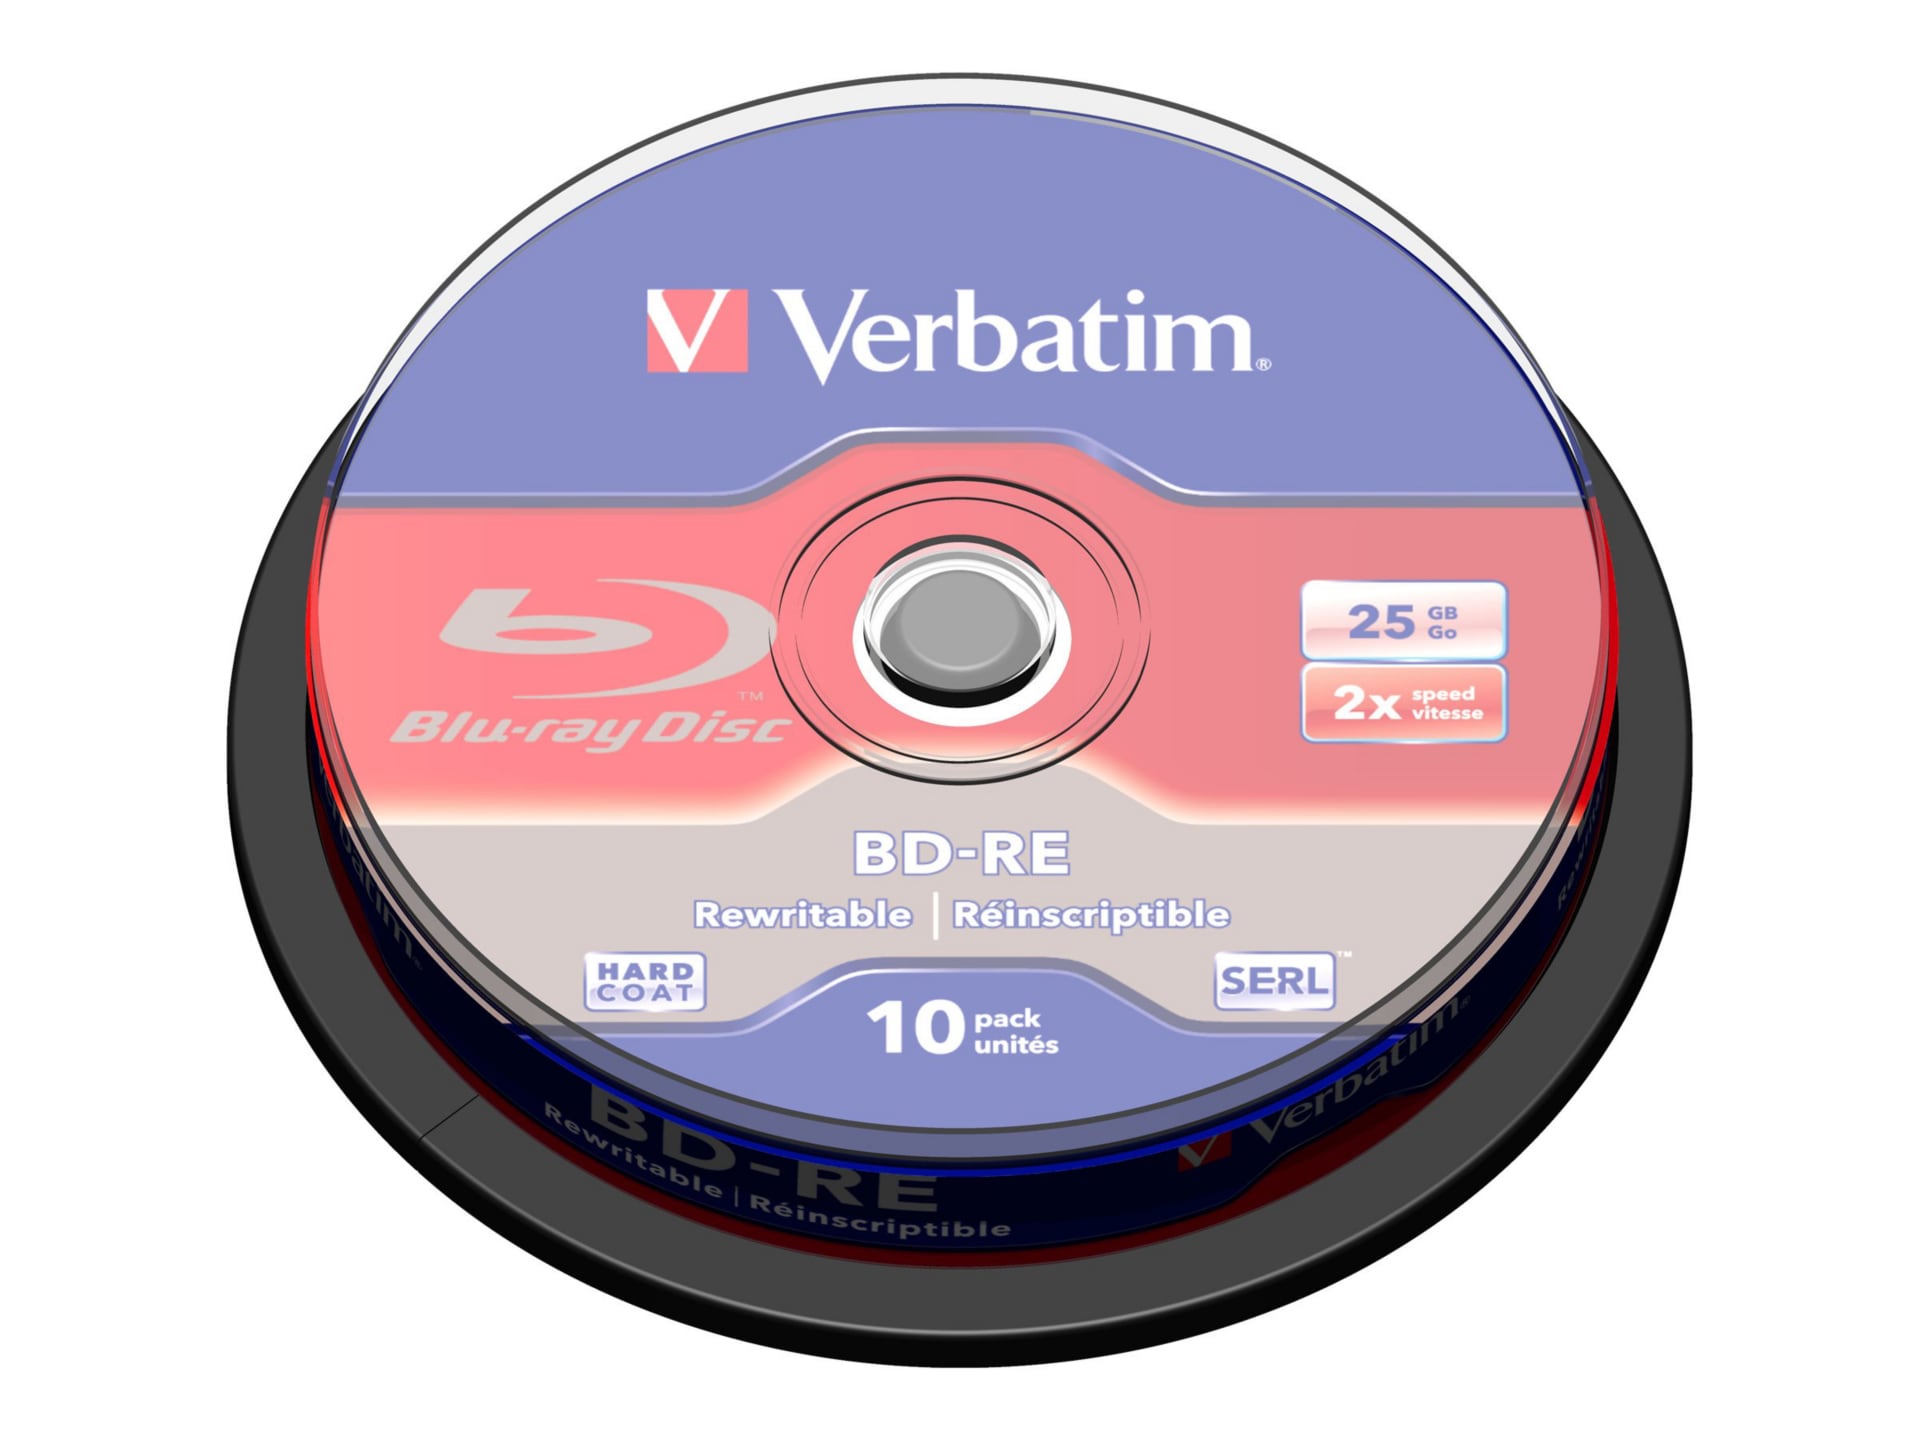 Verbatim - BD-RE x 10 - 25 GB - storage media - 43694 - DVD & Blu